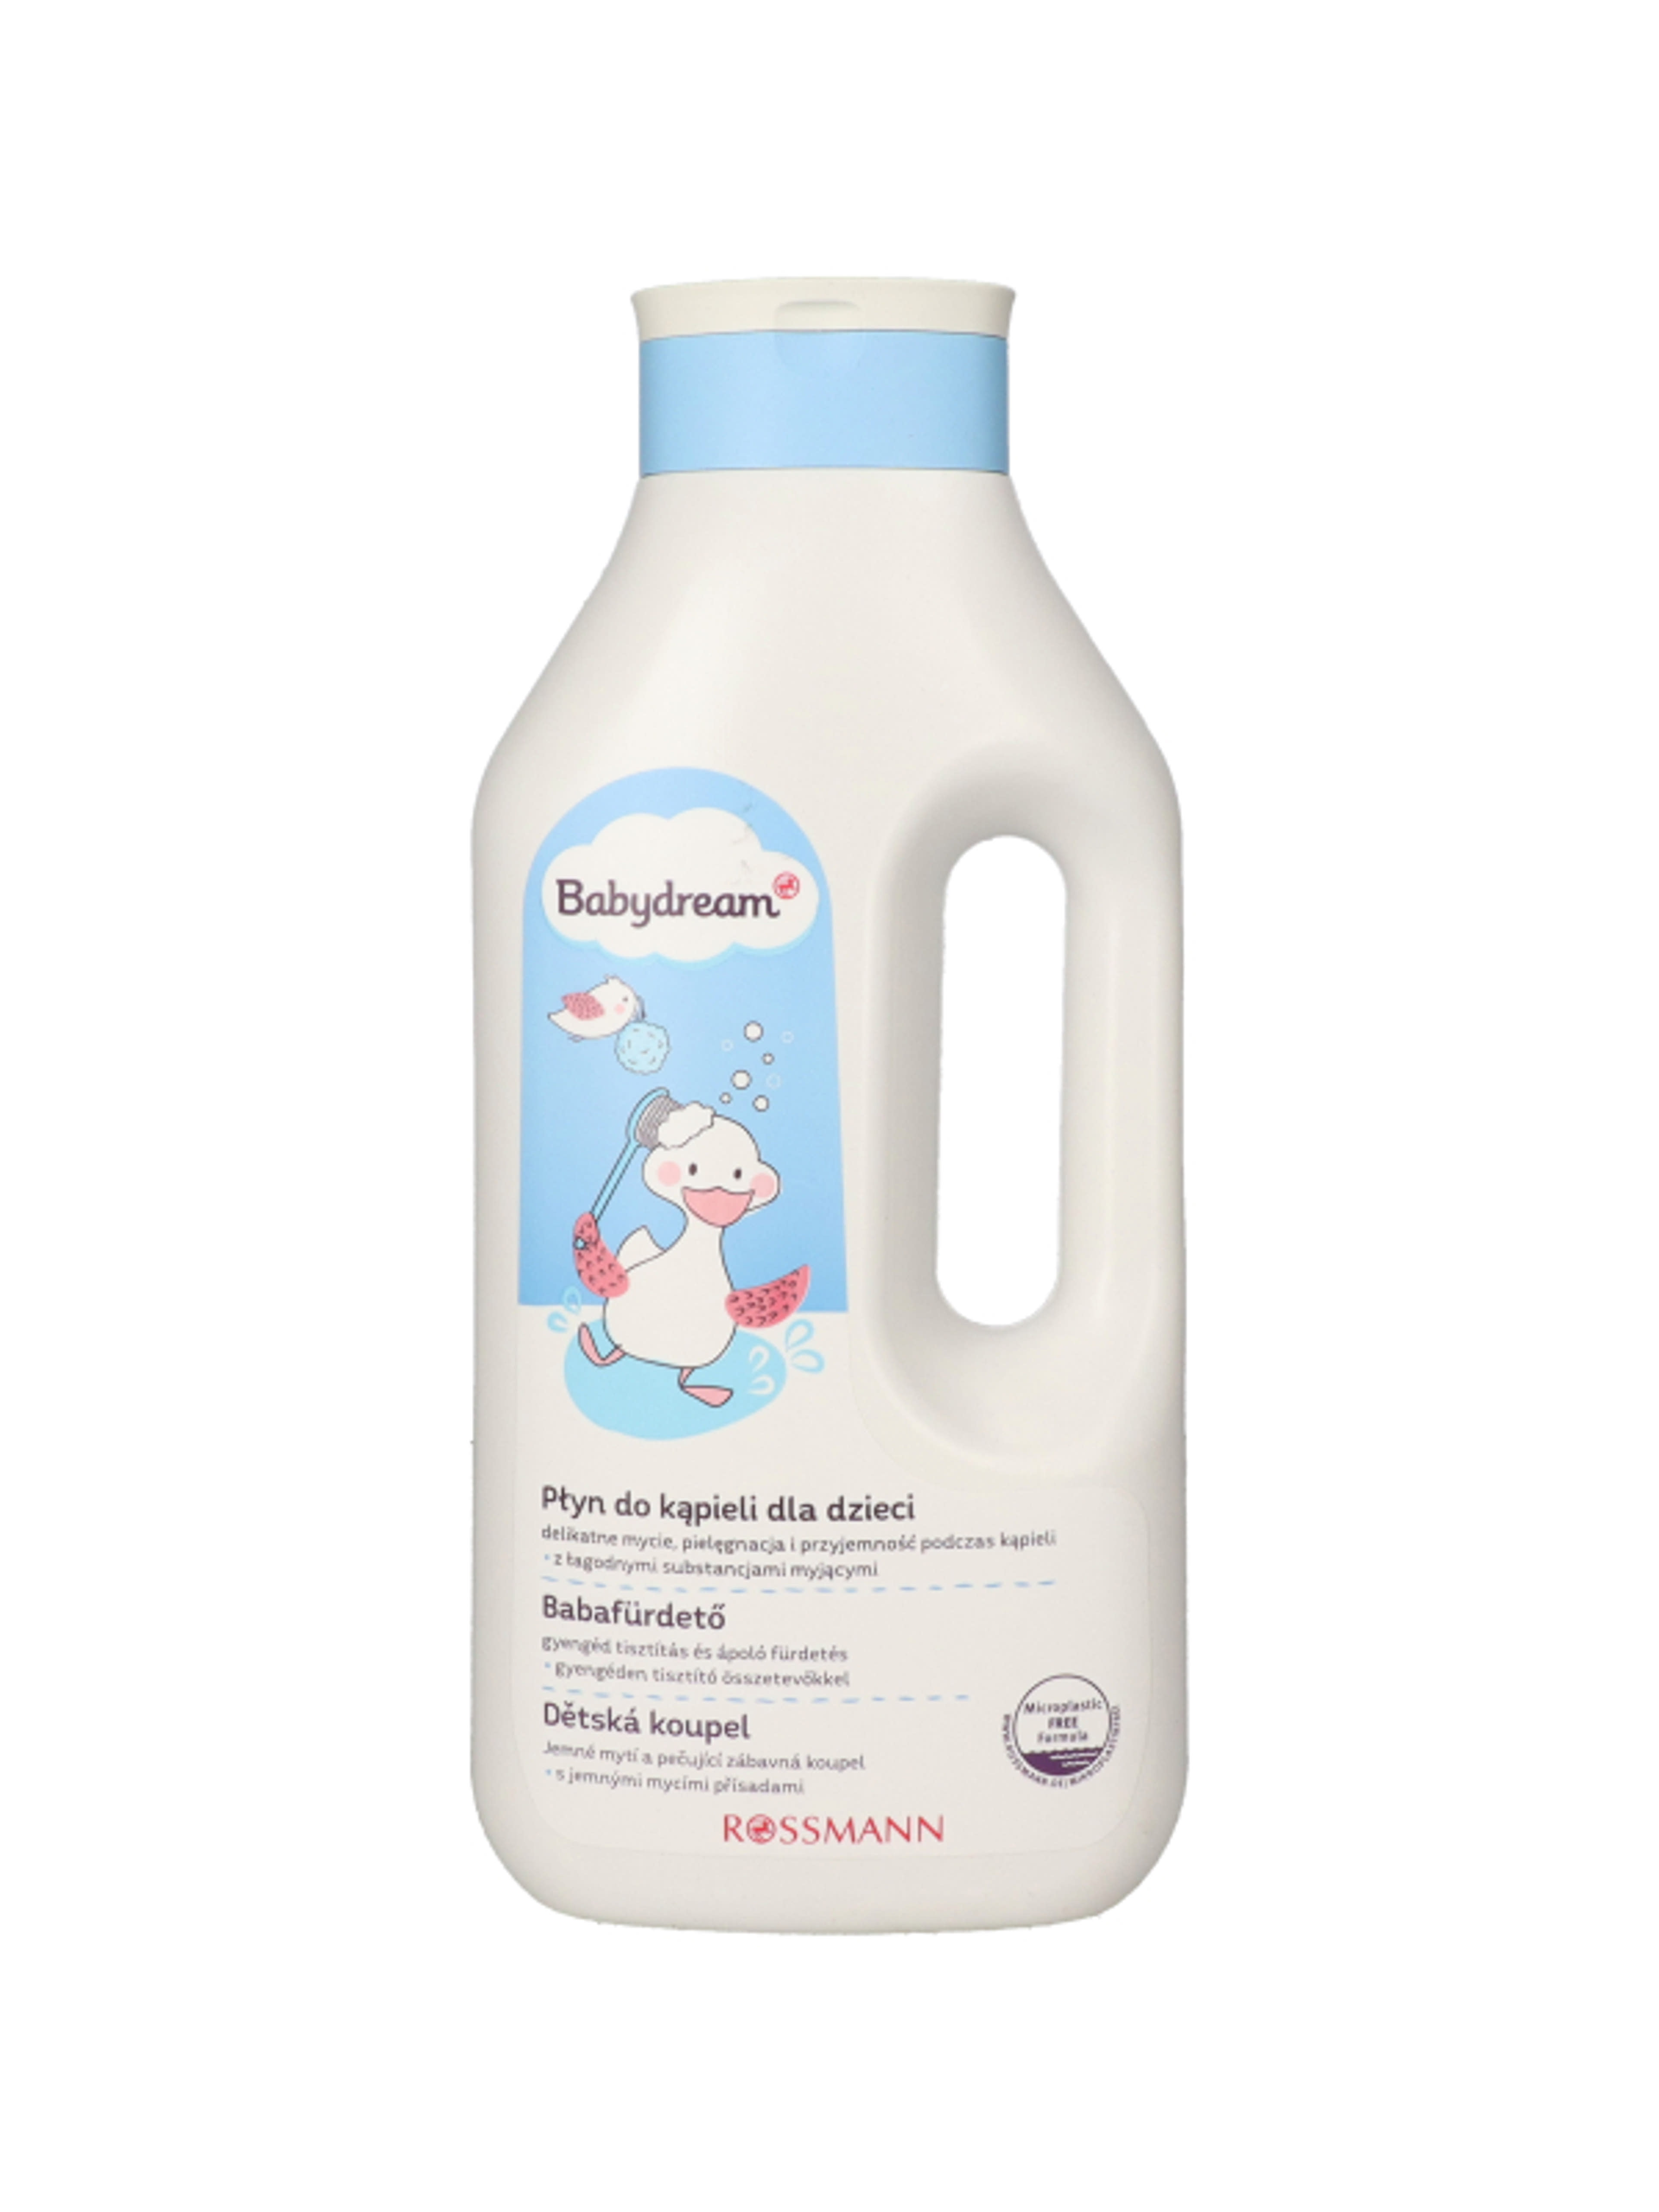 Babydream Sensitive családi fürdető - 1000 ml